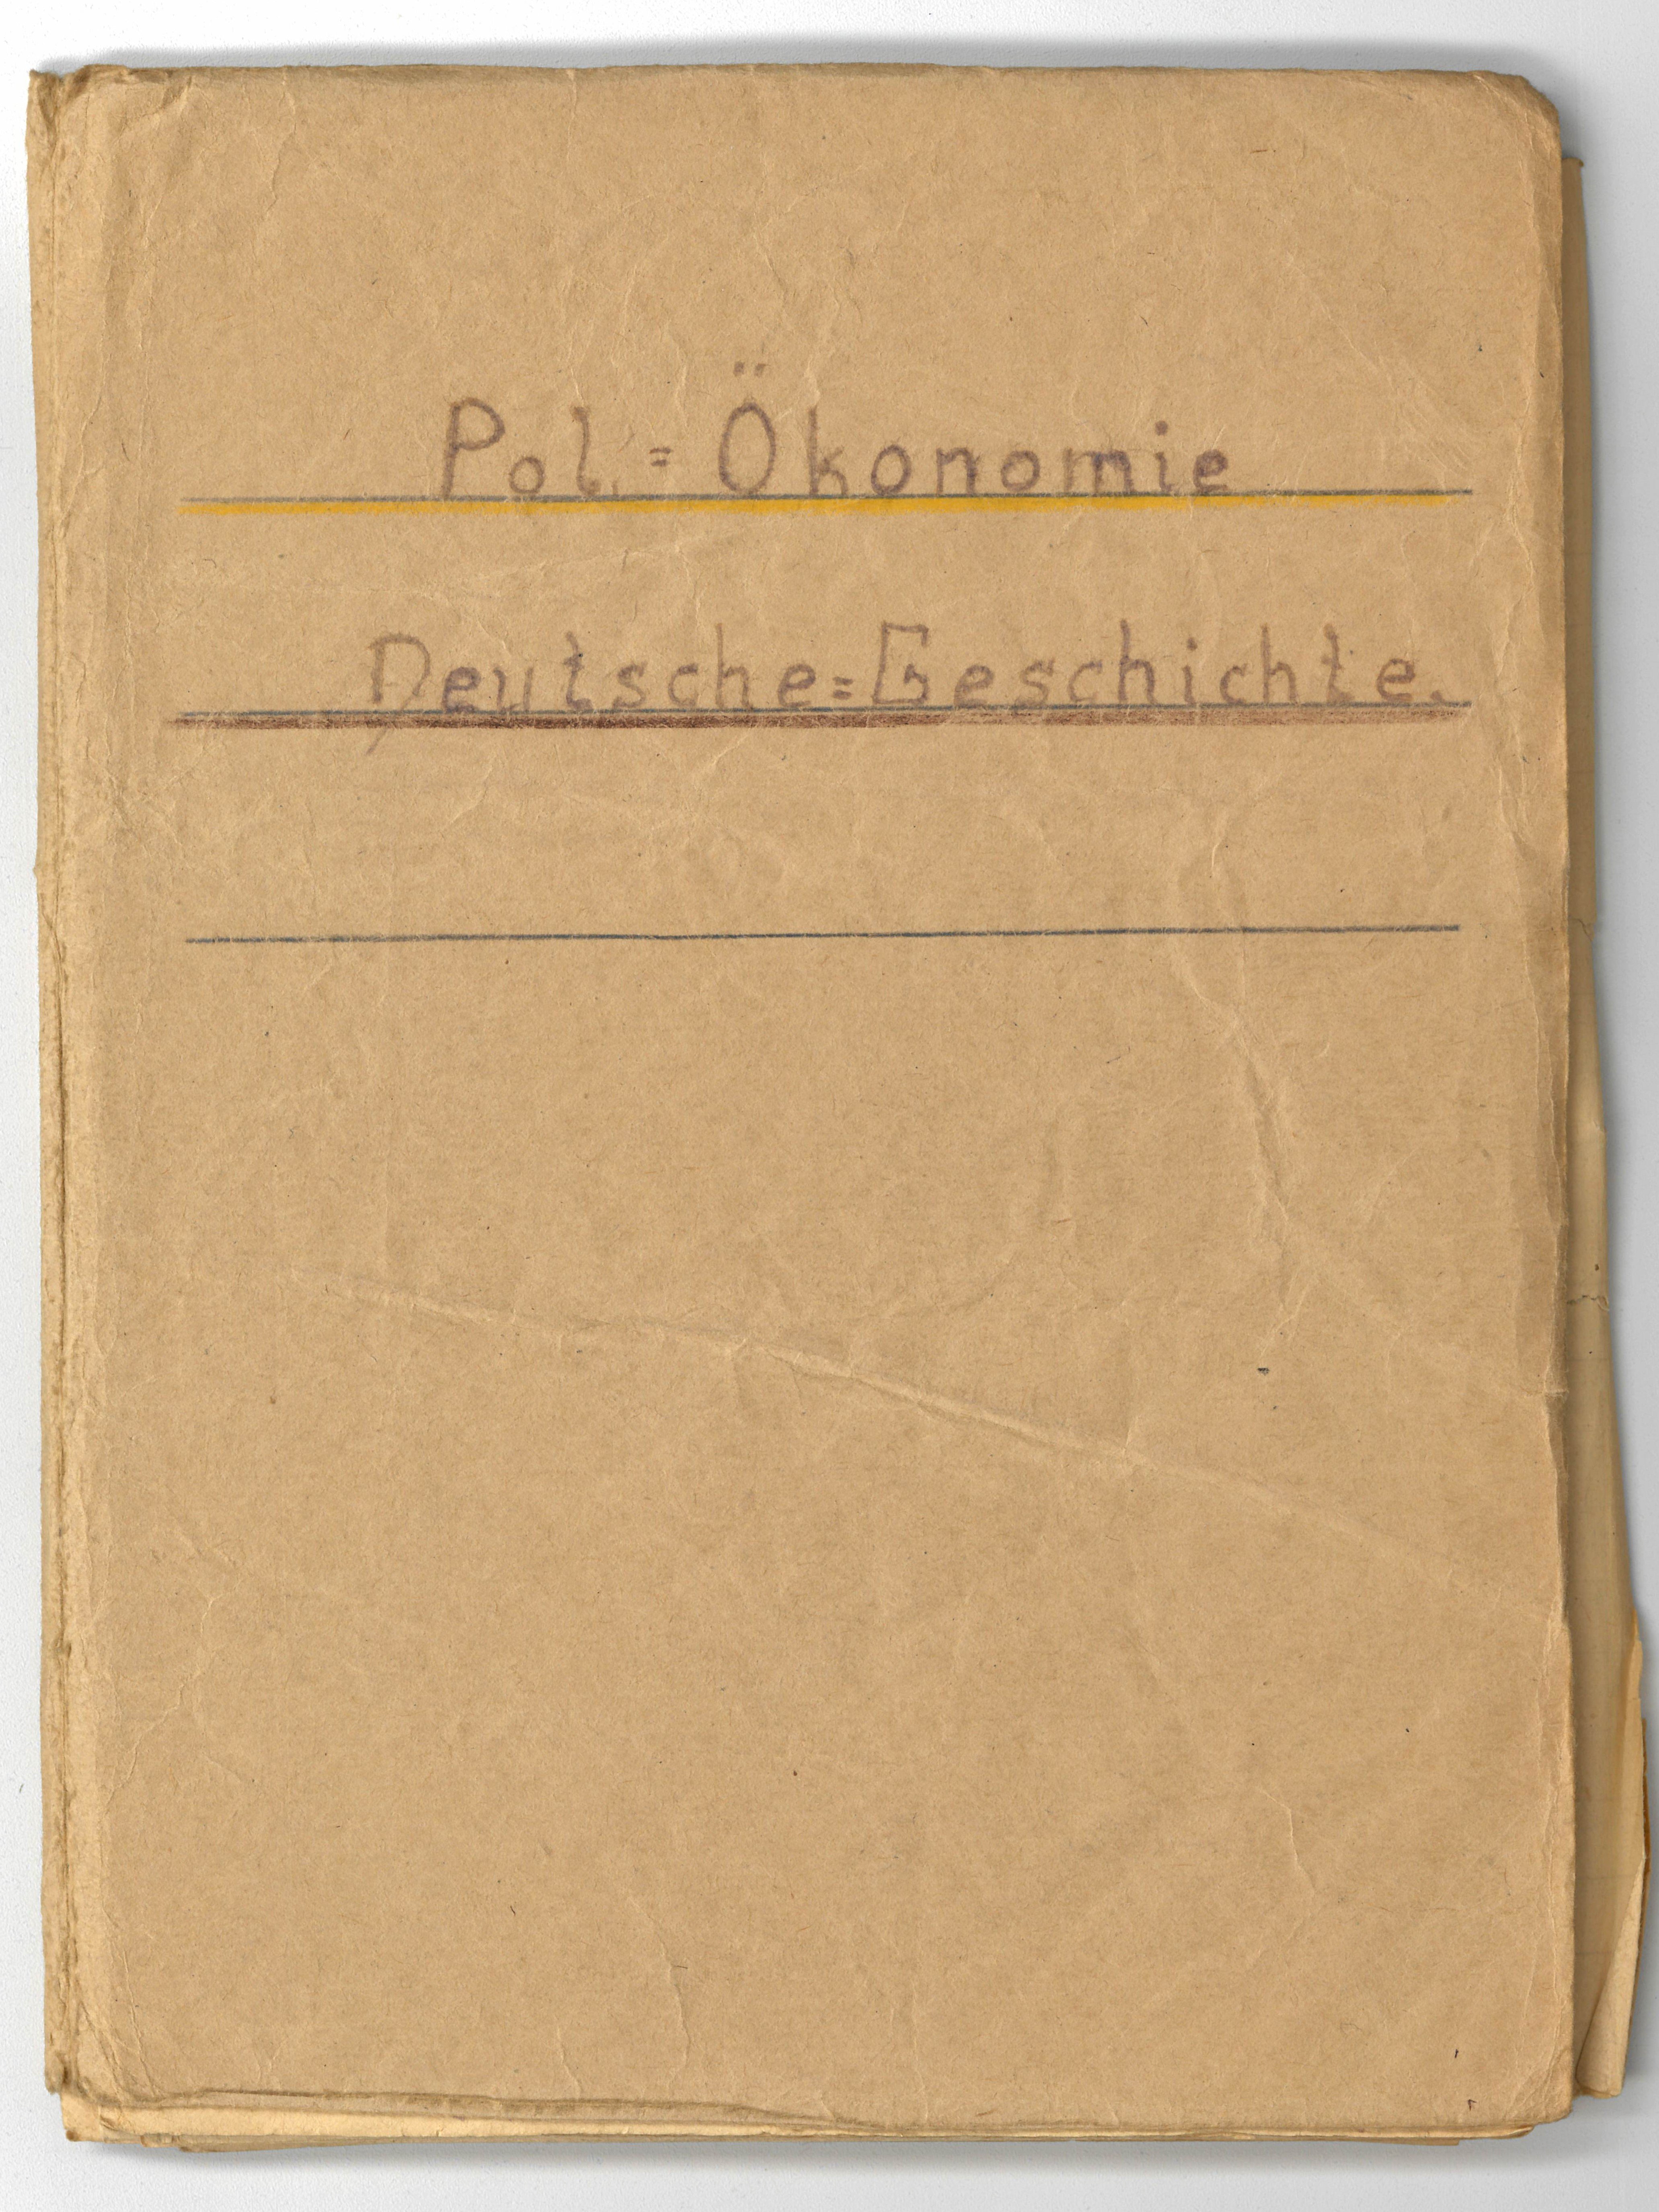 Lernheft Politische Ökonomie und Deutsche Geschichte, Sowjetunion, 1940er Jahre (Deutsch-Russisches Museum Berlin-Karlshorst CC BY-NC-SA)